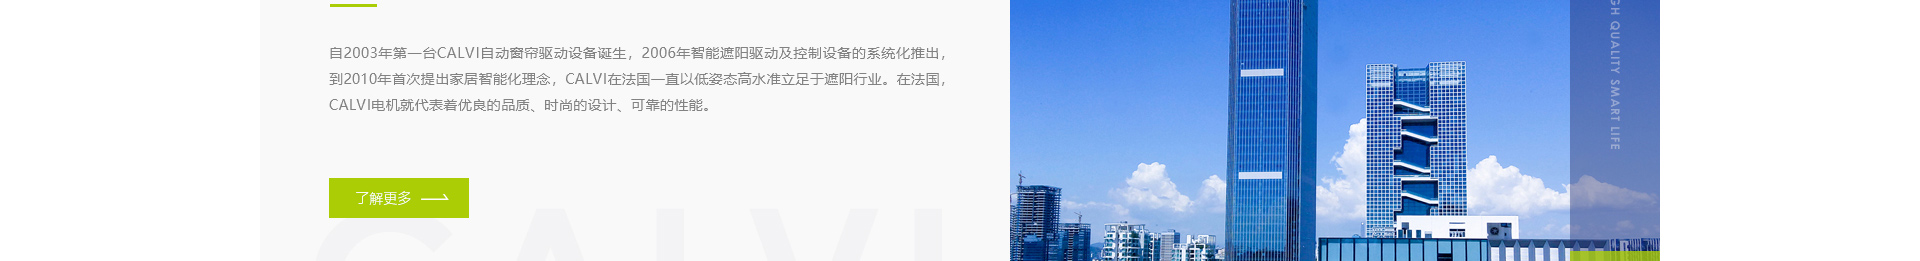 响应式网站案例_高端定制设计_深圳市库沃科技有限公司